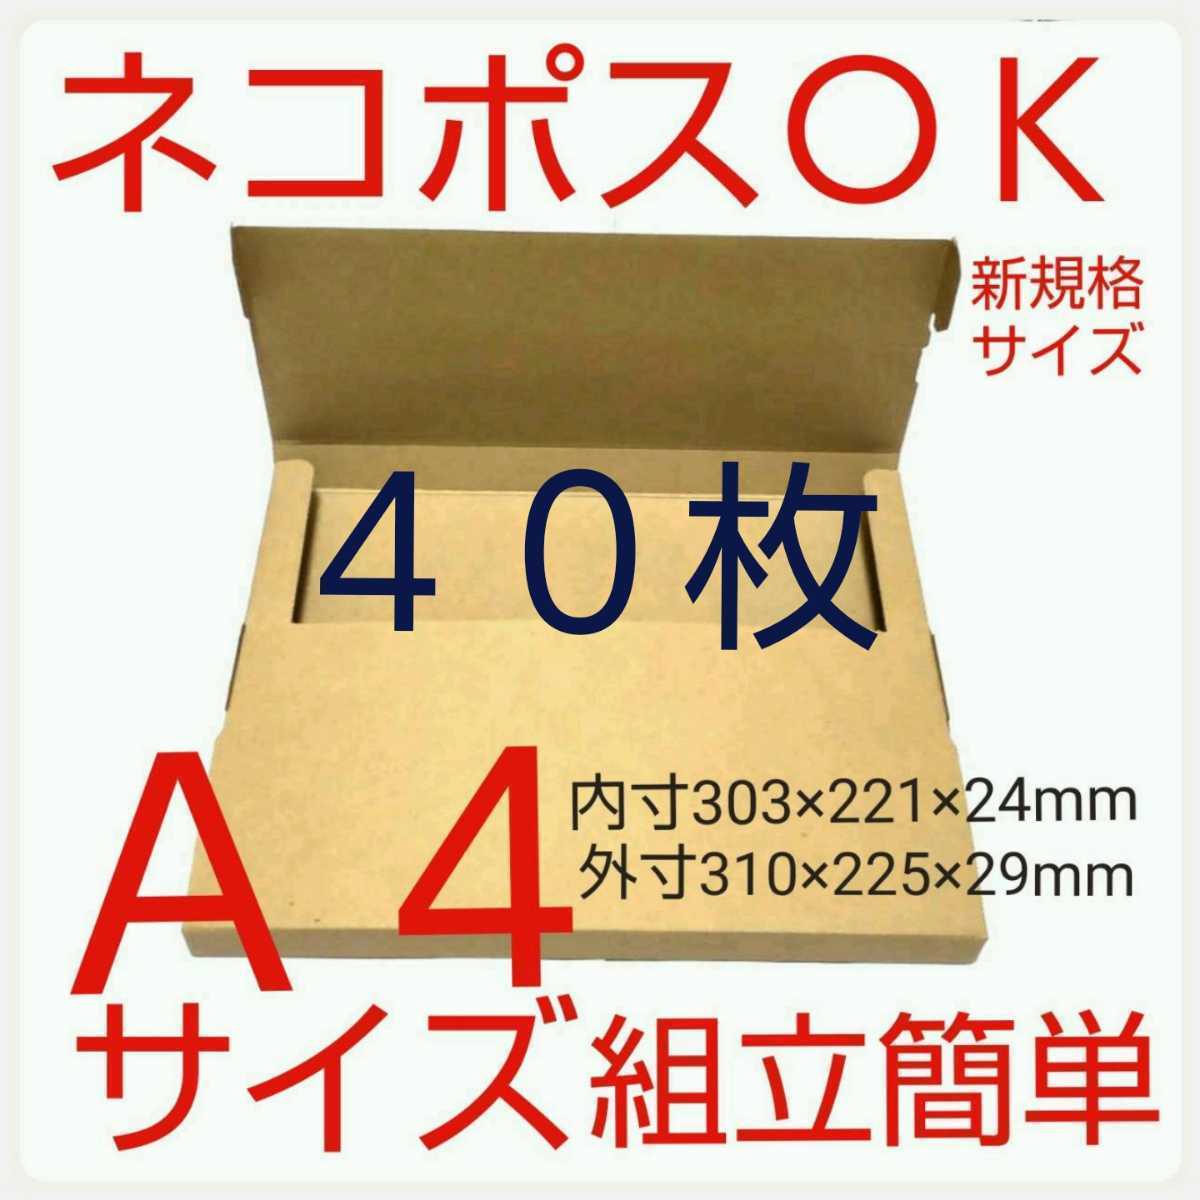 flima рейс кошка pohs *.. пачка * клик post для упаковка материал * сделано в Японии 